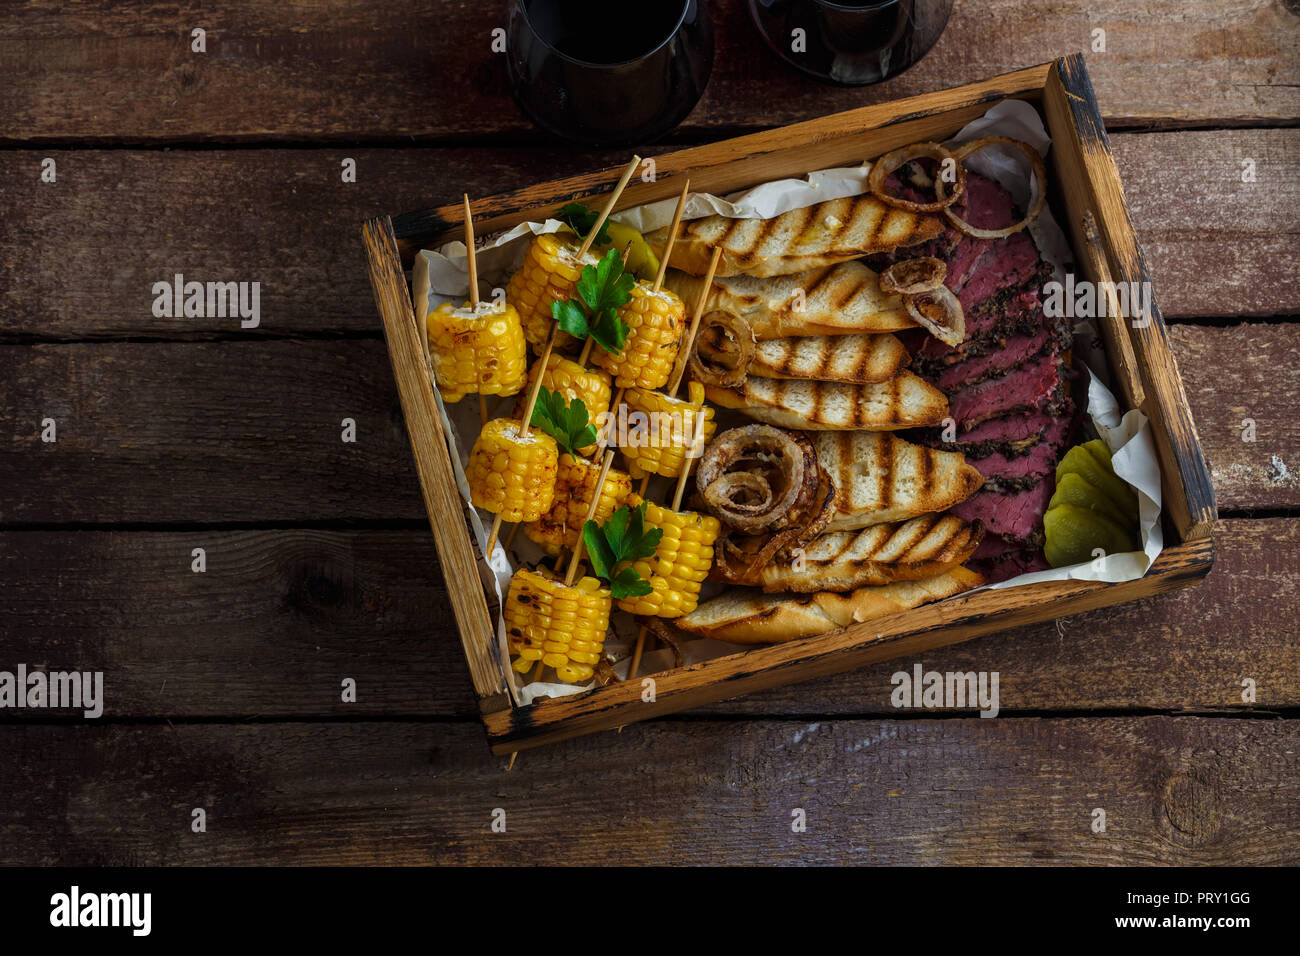 Maïs grillé, tranches de pastrami et pain grillé avec du vin, vue de dessus de l'espace de copie. Banque D'Images